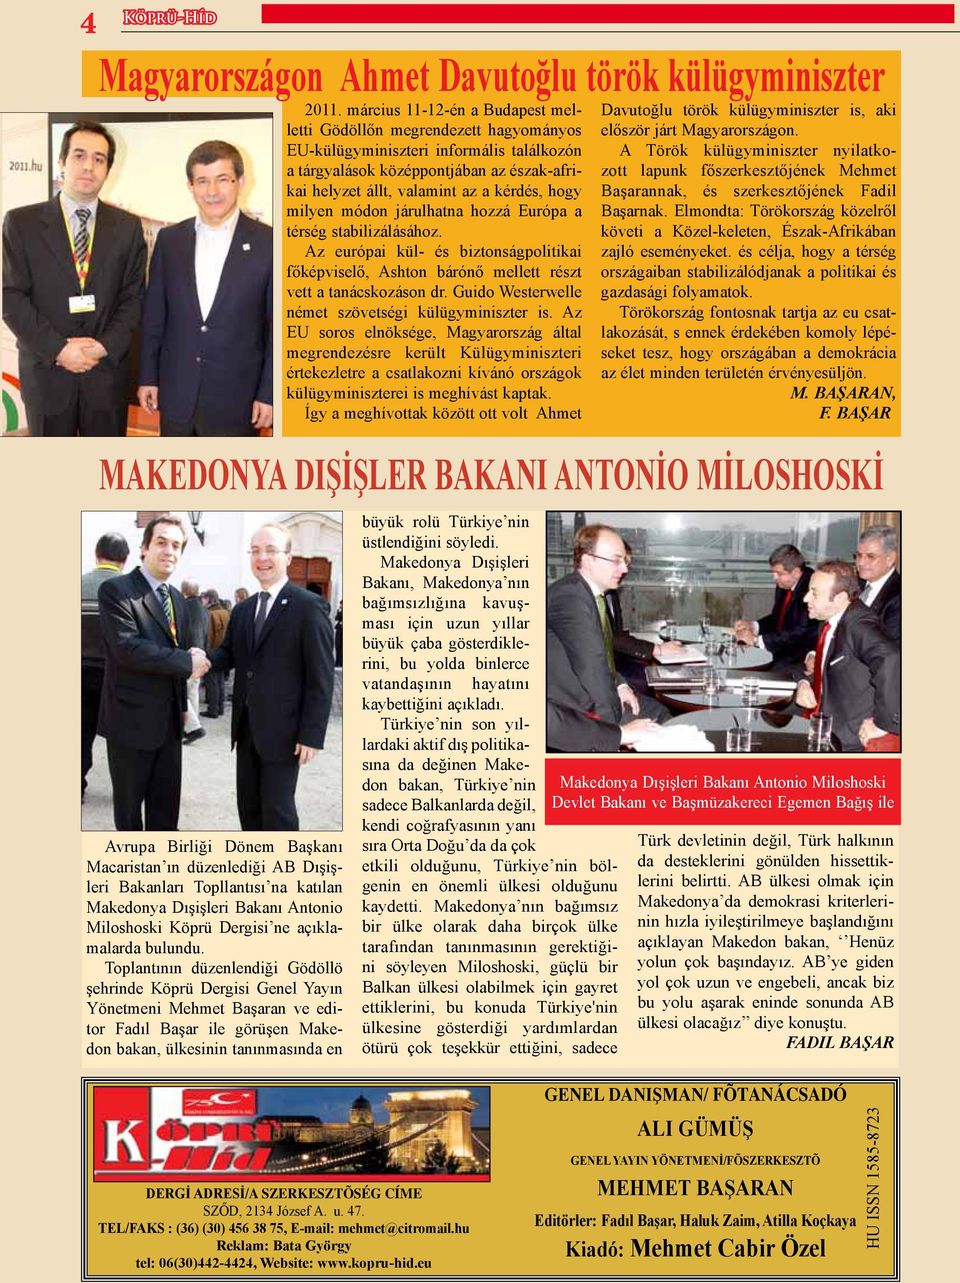 Toplantının düzenlendiği Gödöllö şehrinde Köprü Dergisi Genel Yayın Yönetmeni Mehmet Başaran ve editor Fadıl Başar ile görüşen Makedon bakan, ülkesinin tanınmasında en 2011.